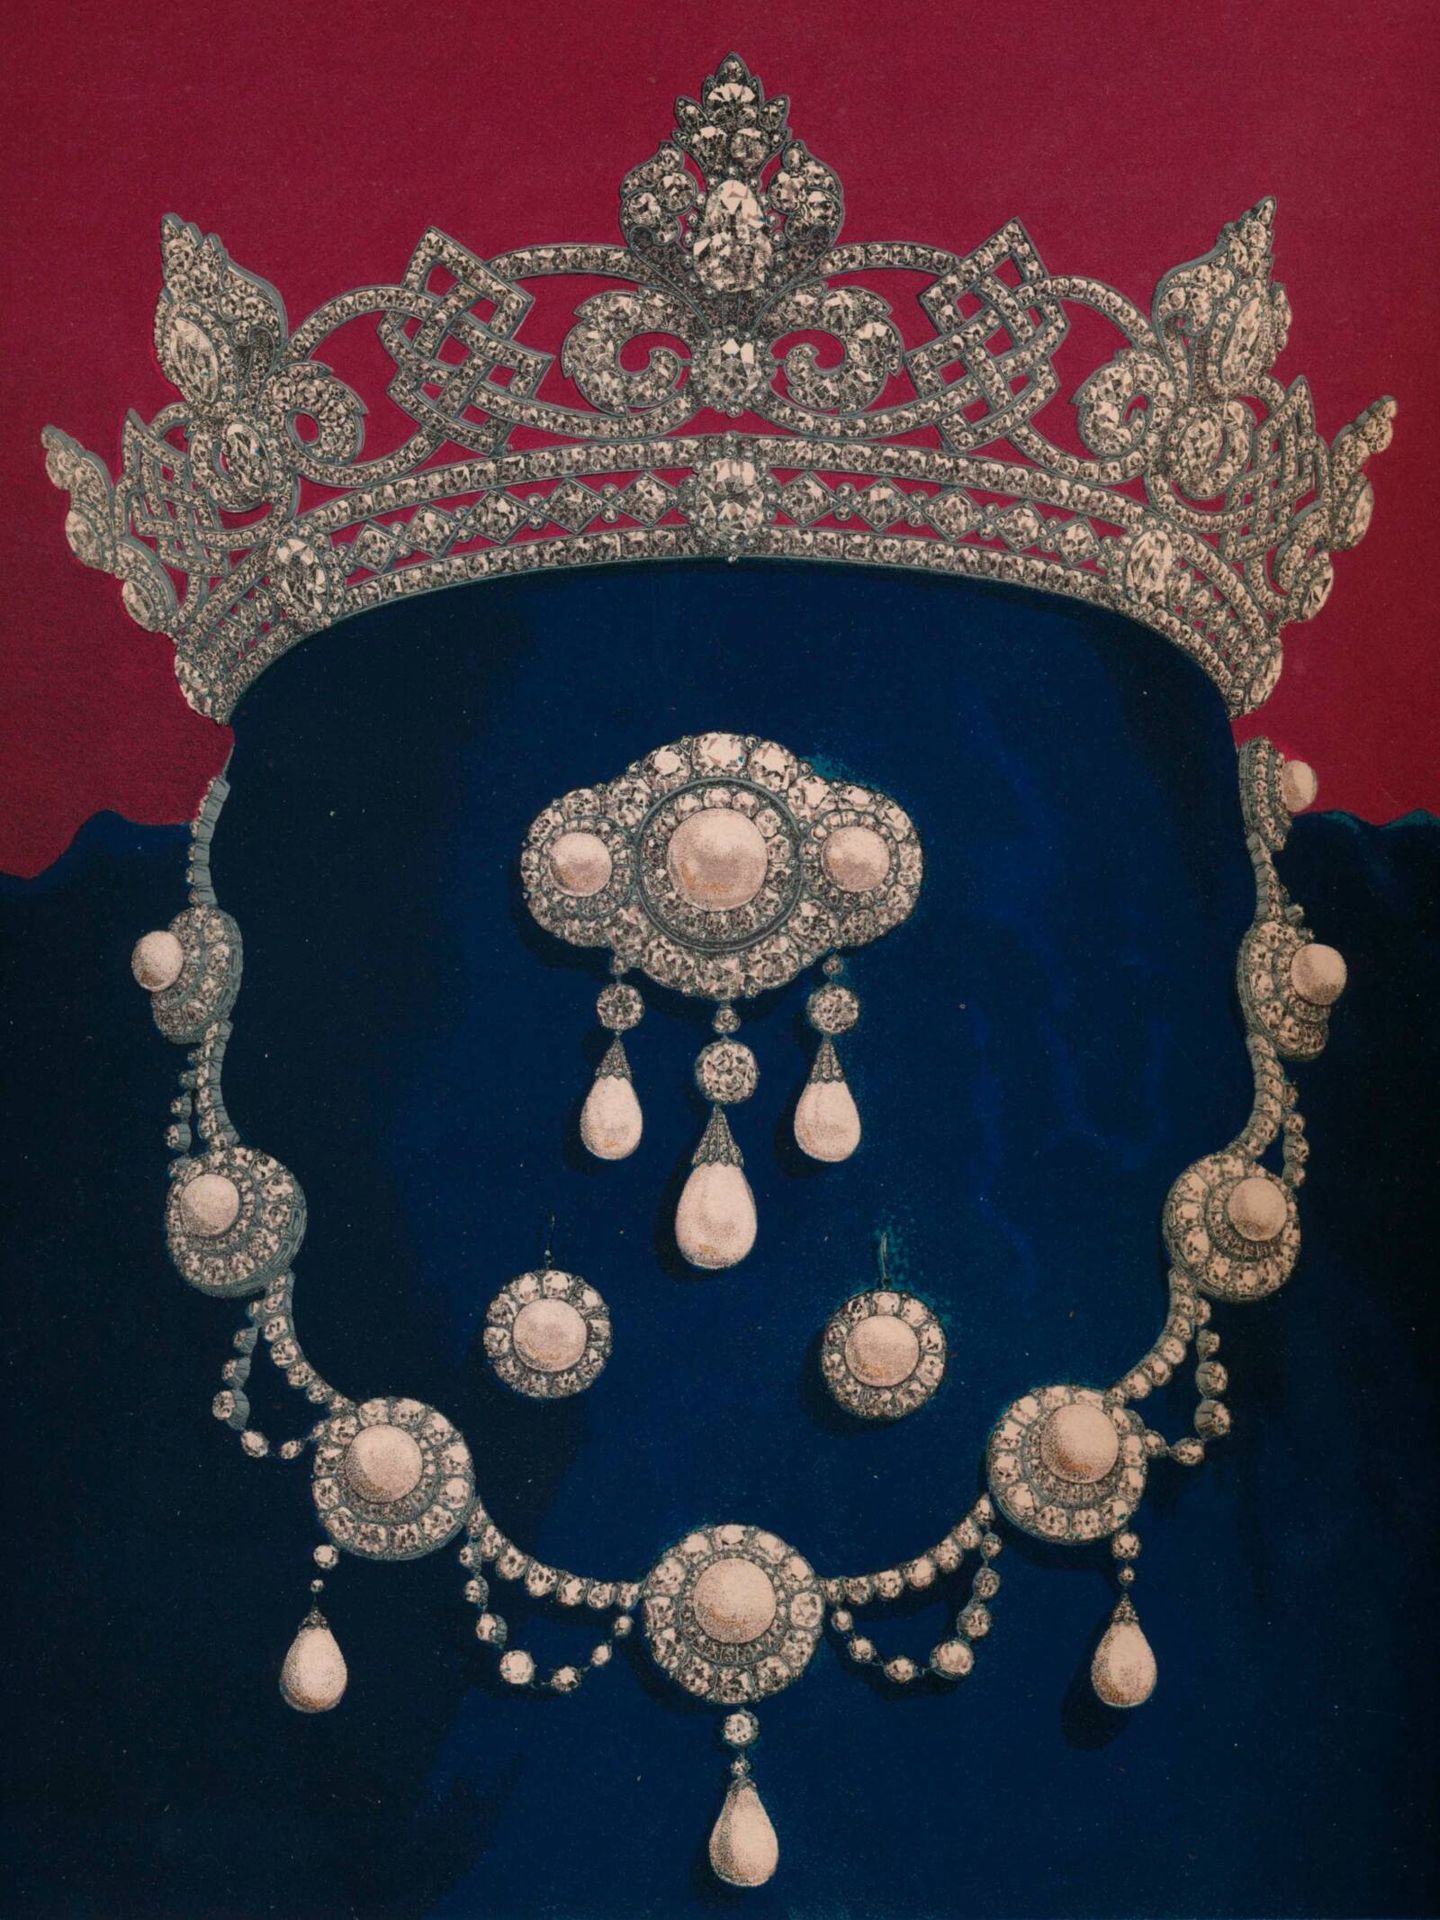 El parure de diamantes Rundell, incluyendo la tiara. (Cordon Press/The Print Collector)